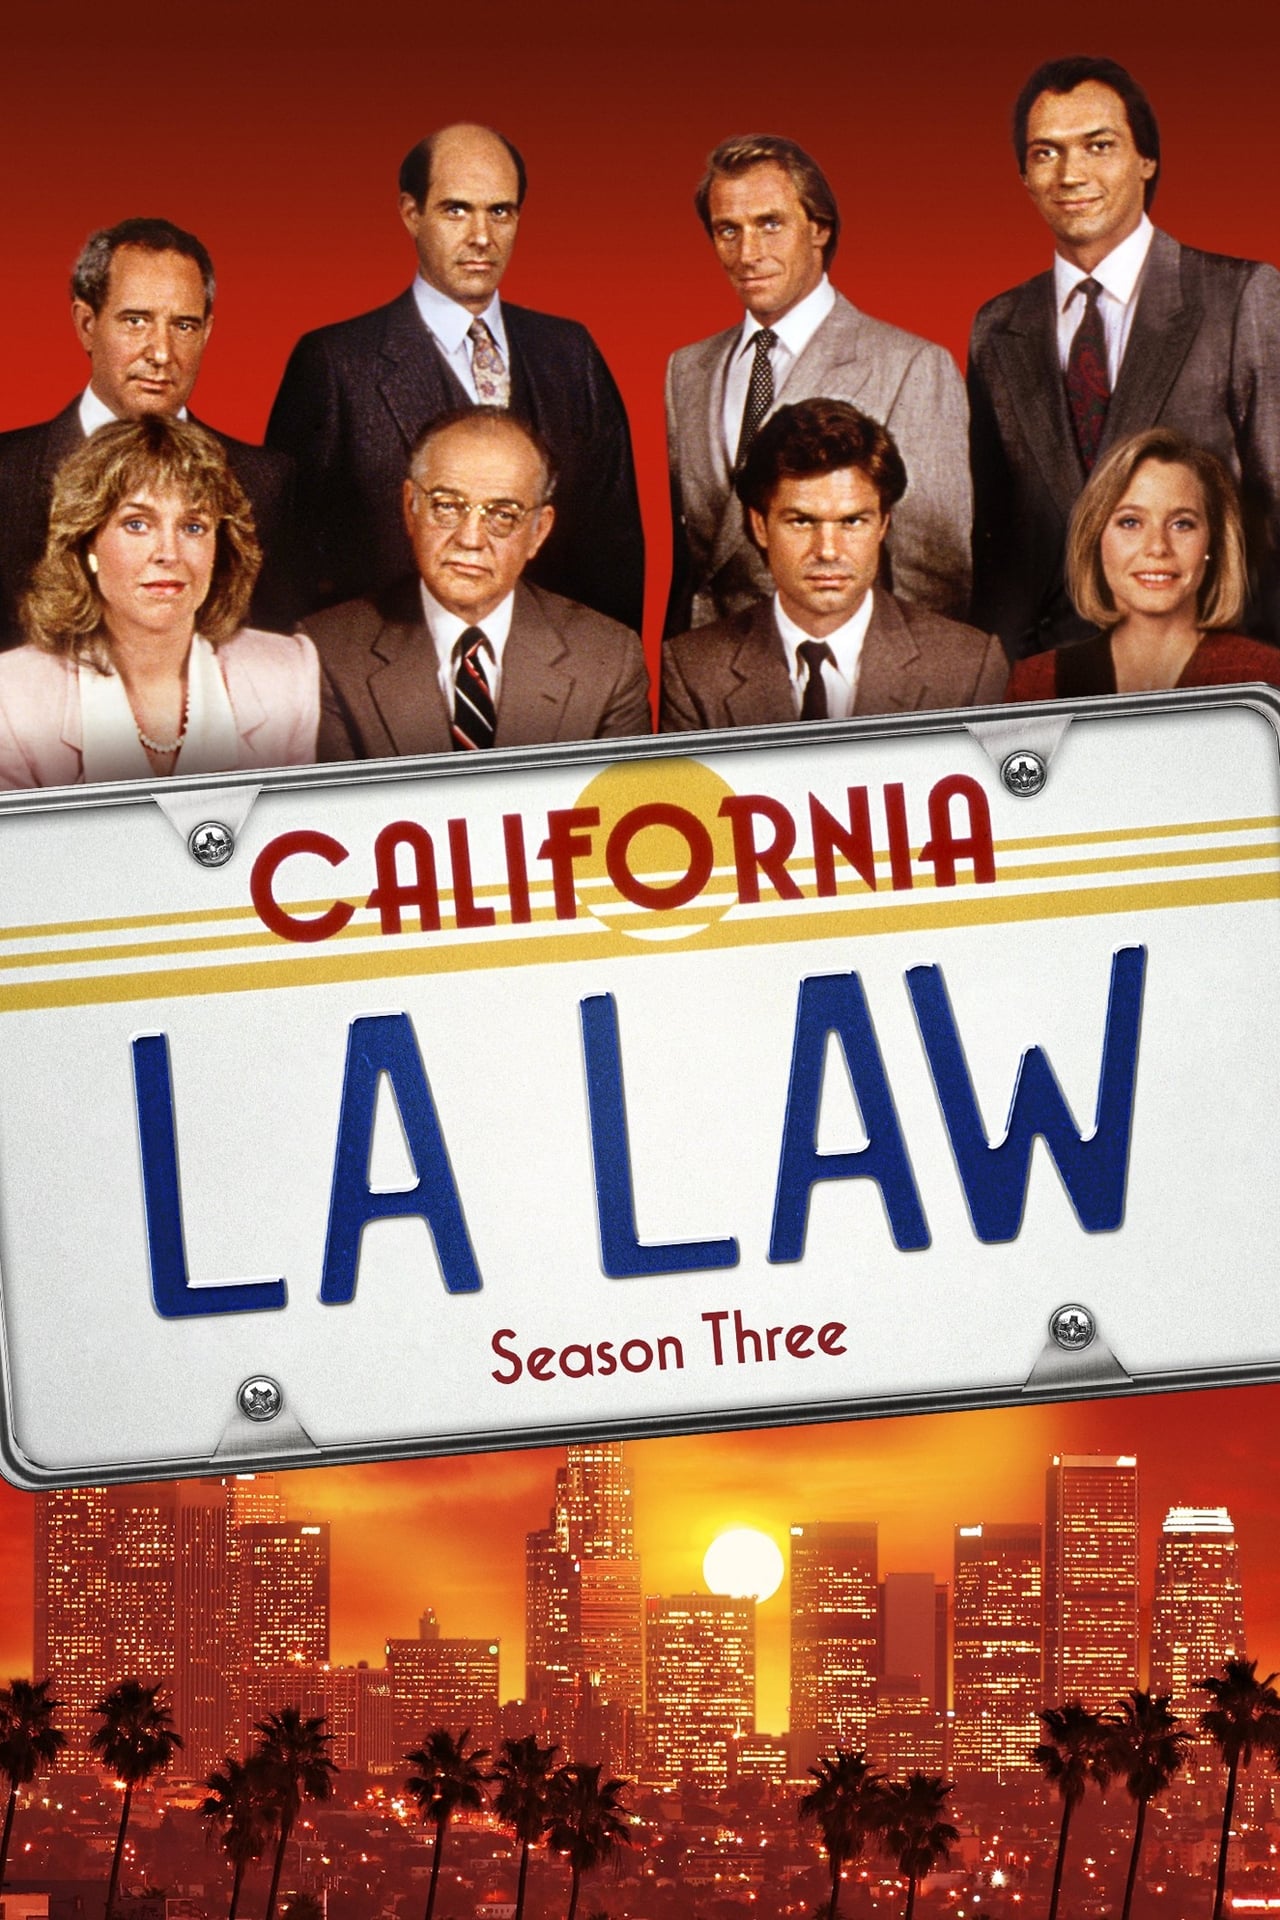 L.A. Law Season 3